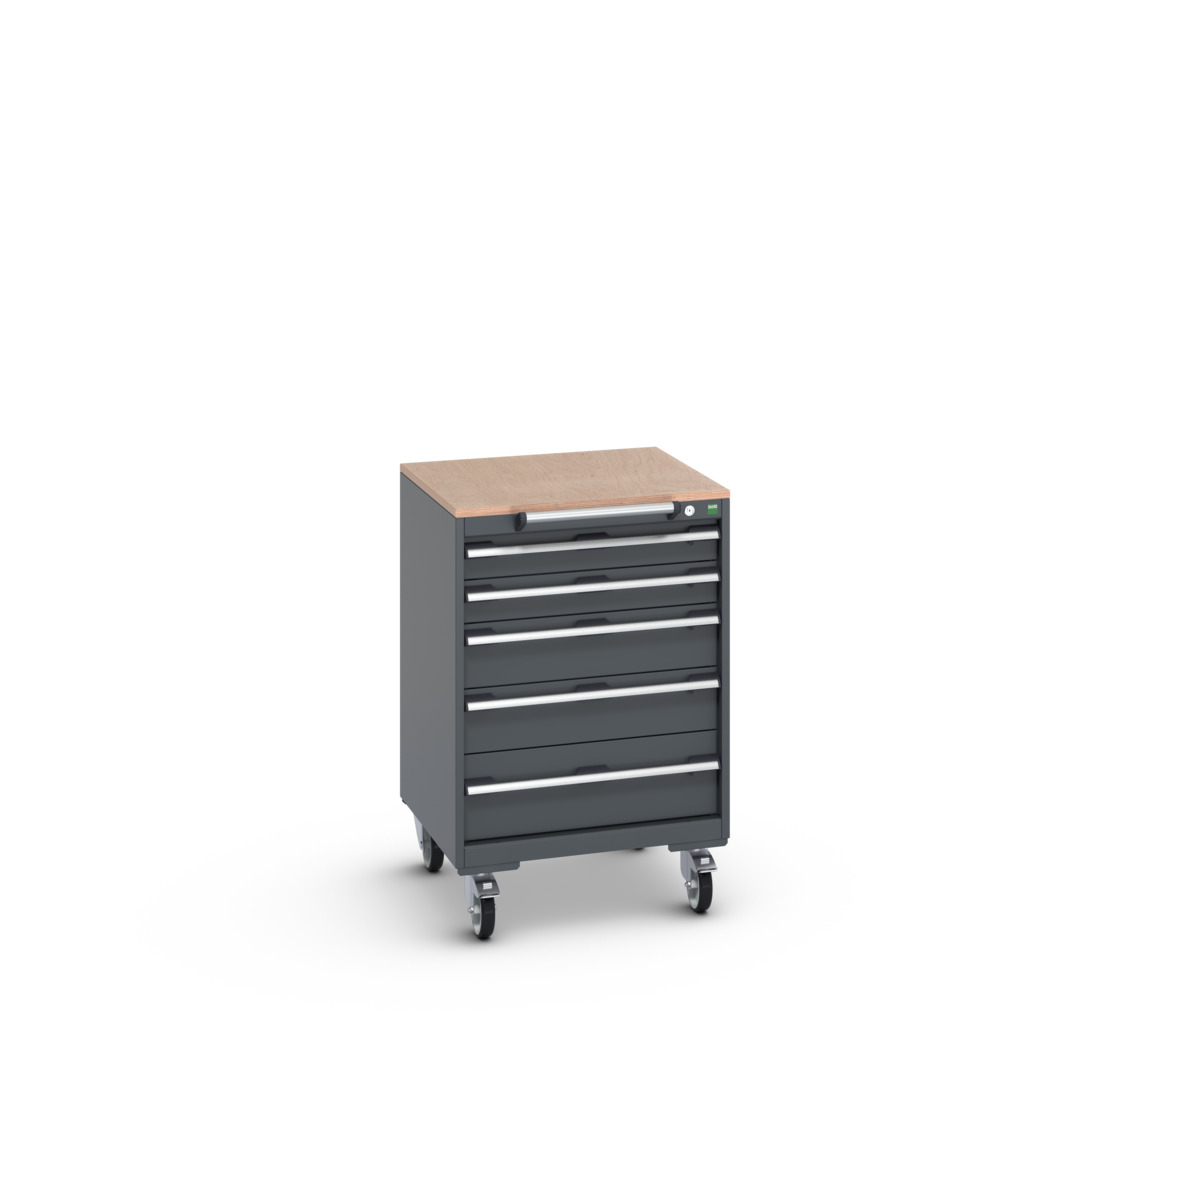 40402149.77V - cubio mobile cabinet